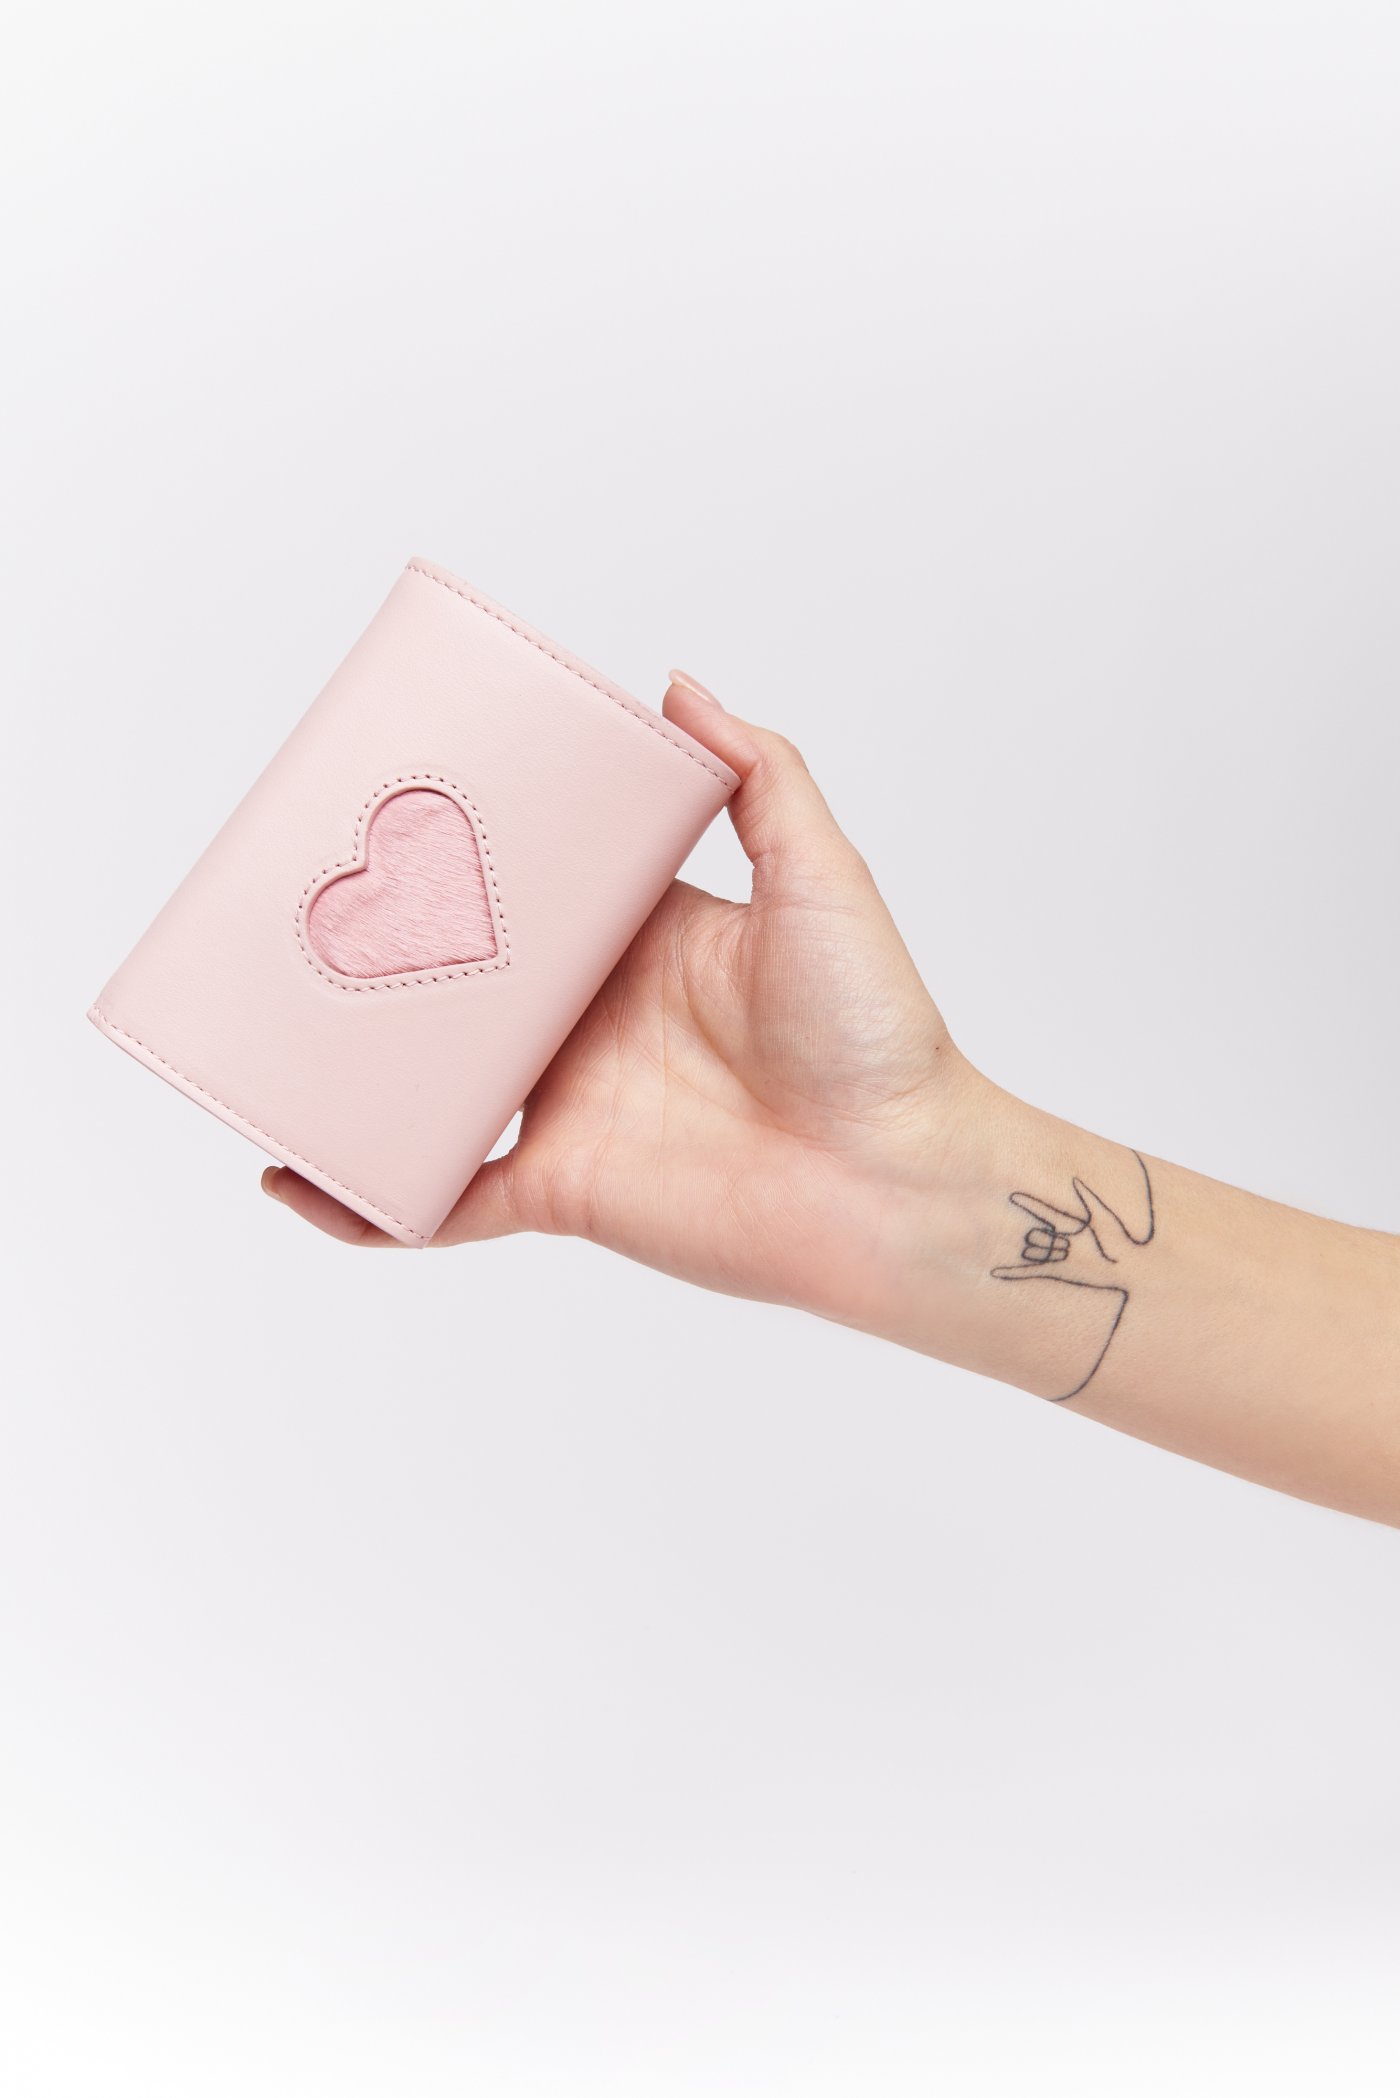 Weisz Fanni - First Dream Pink pénztárca szívecskés 